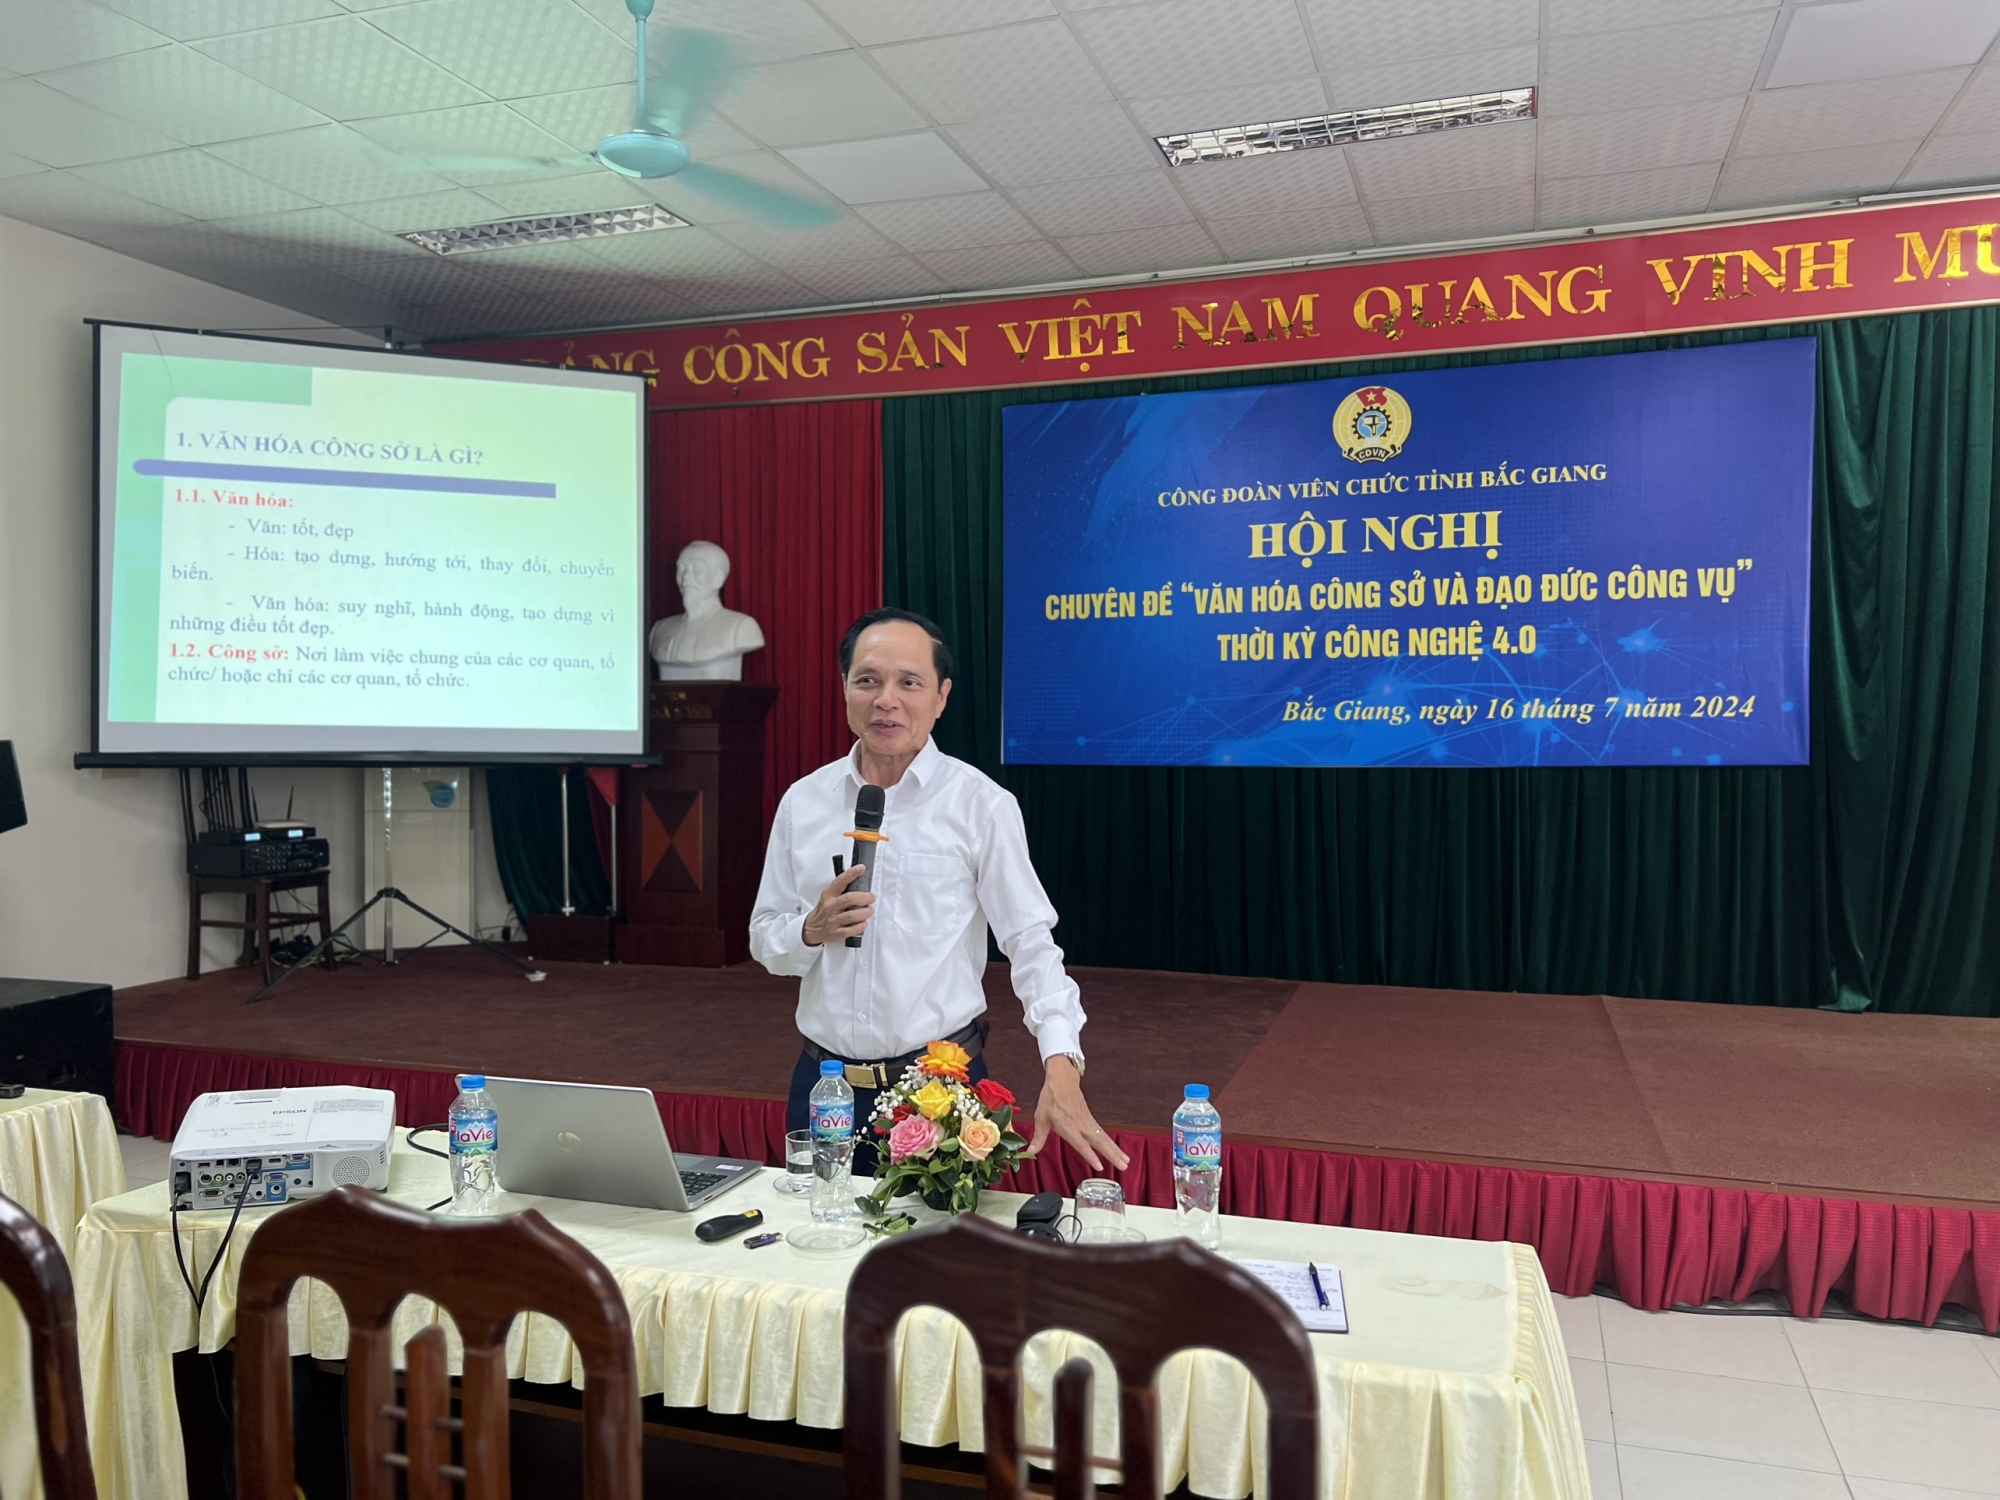 Công đoàn Viên chức tỉnh Bắc Giang: tổ chức hội nghị chuyên đề “Văn hóa công sở và Đạo đức công vụ” thời kỳ công nghệ 4.0